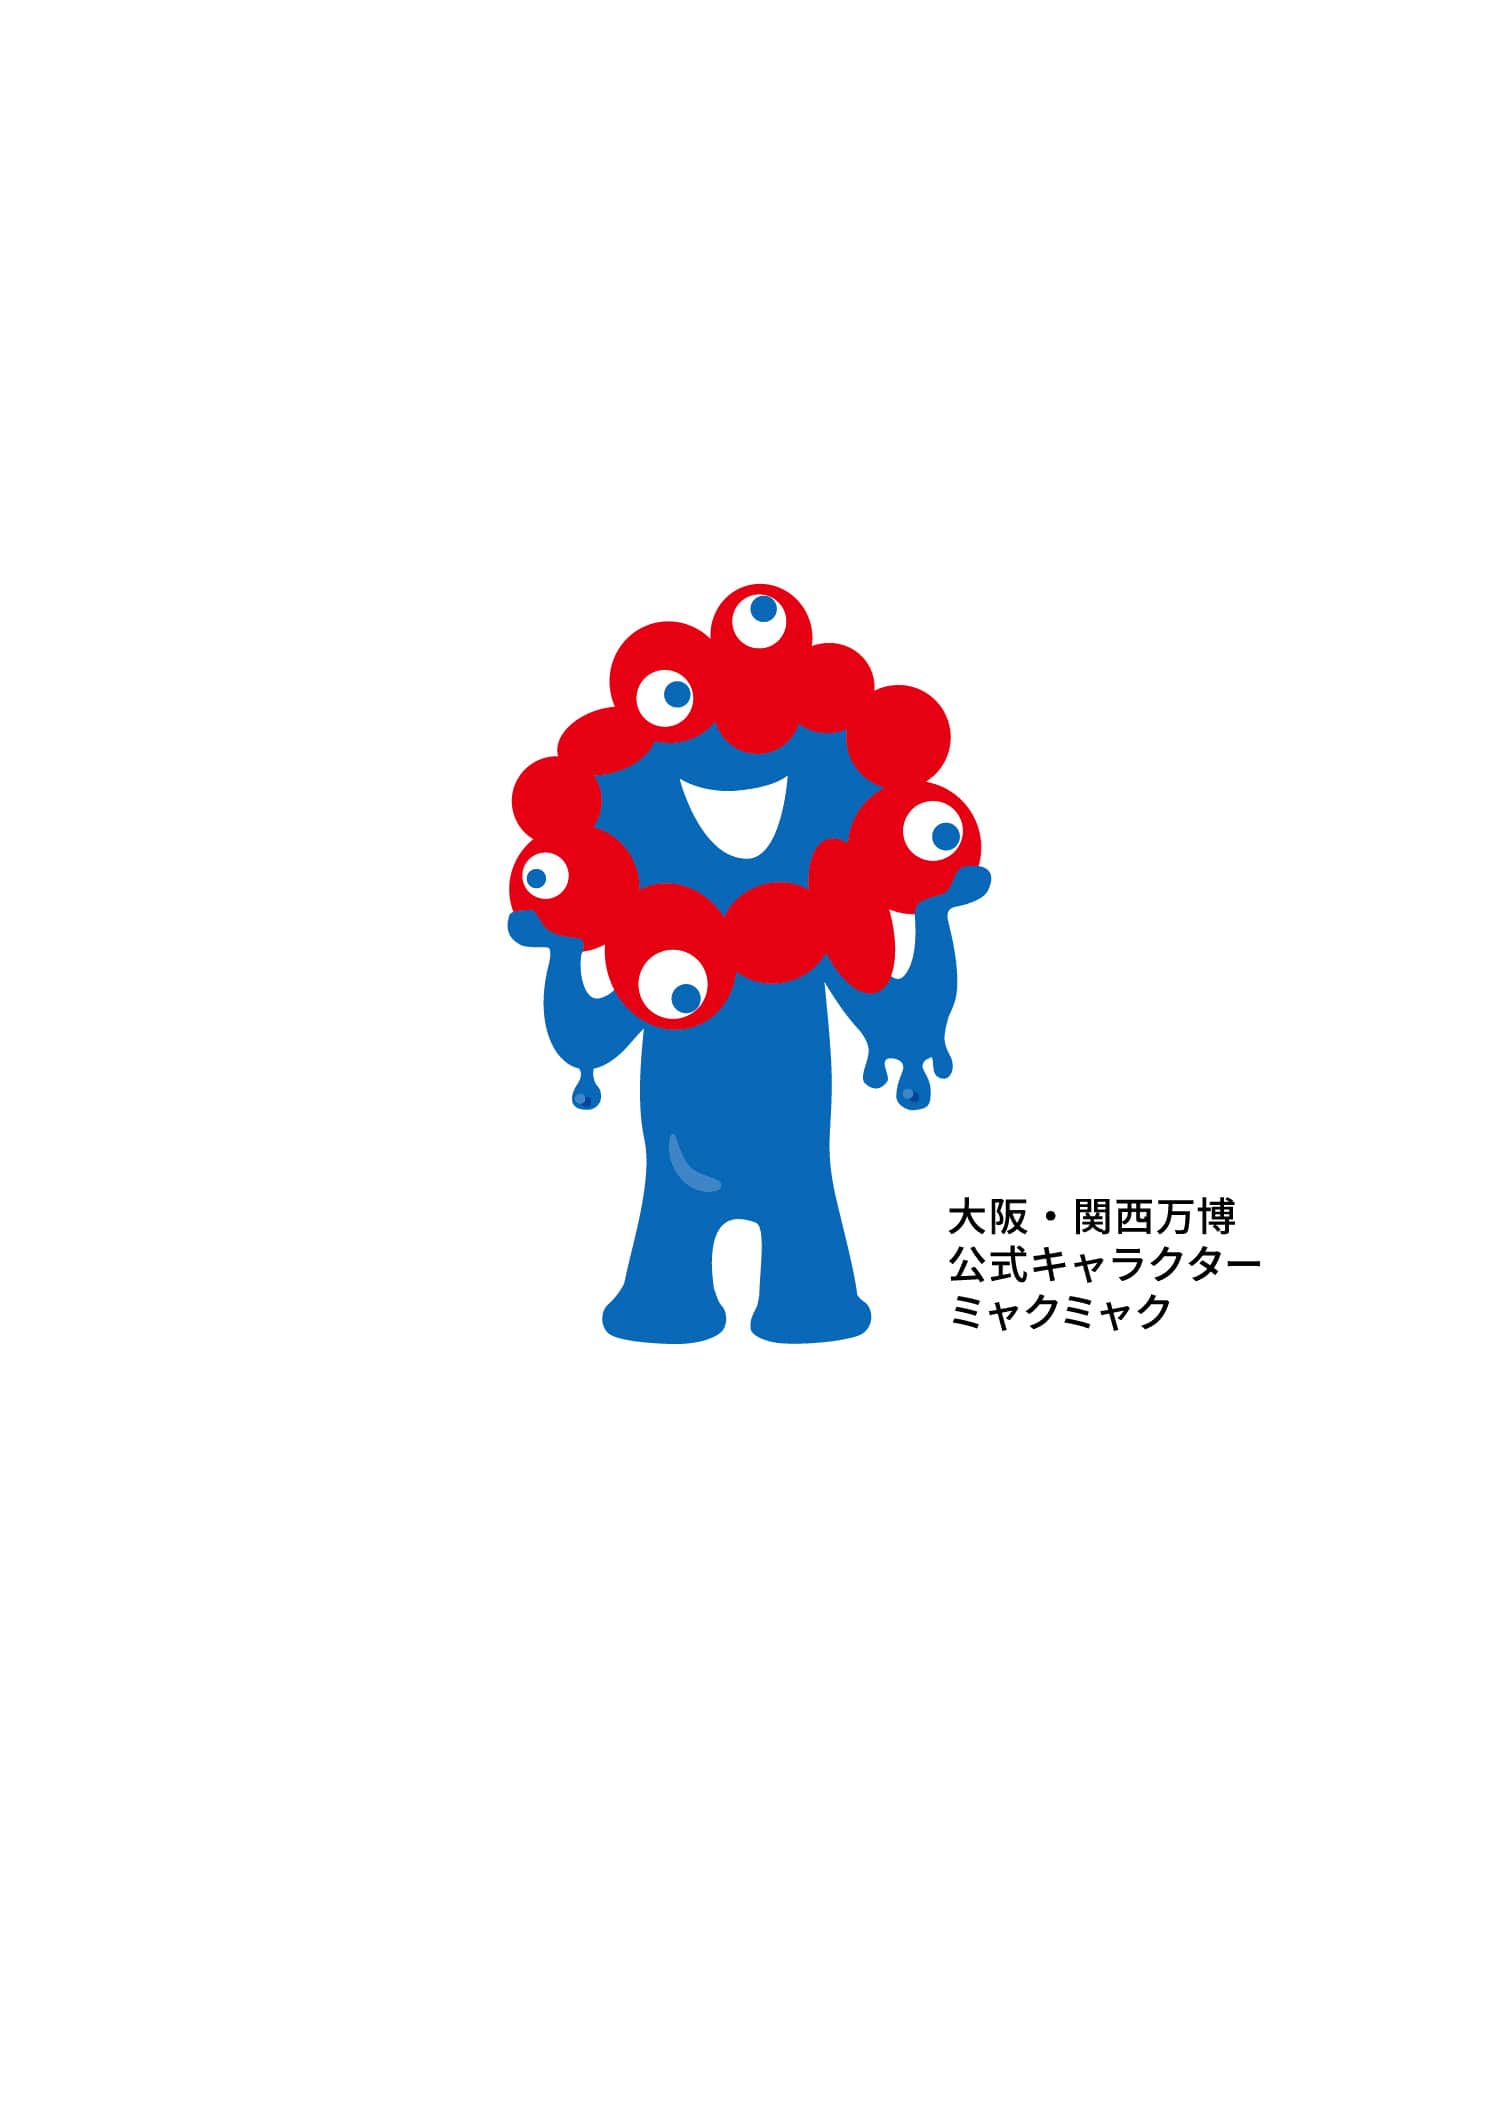 東和薬品は大阪・関西万博シグネチャーパビリオン「Co-being」に協賛しています。東和薬品